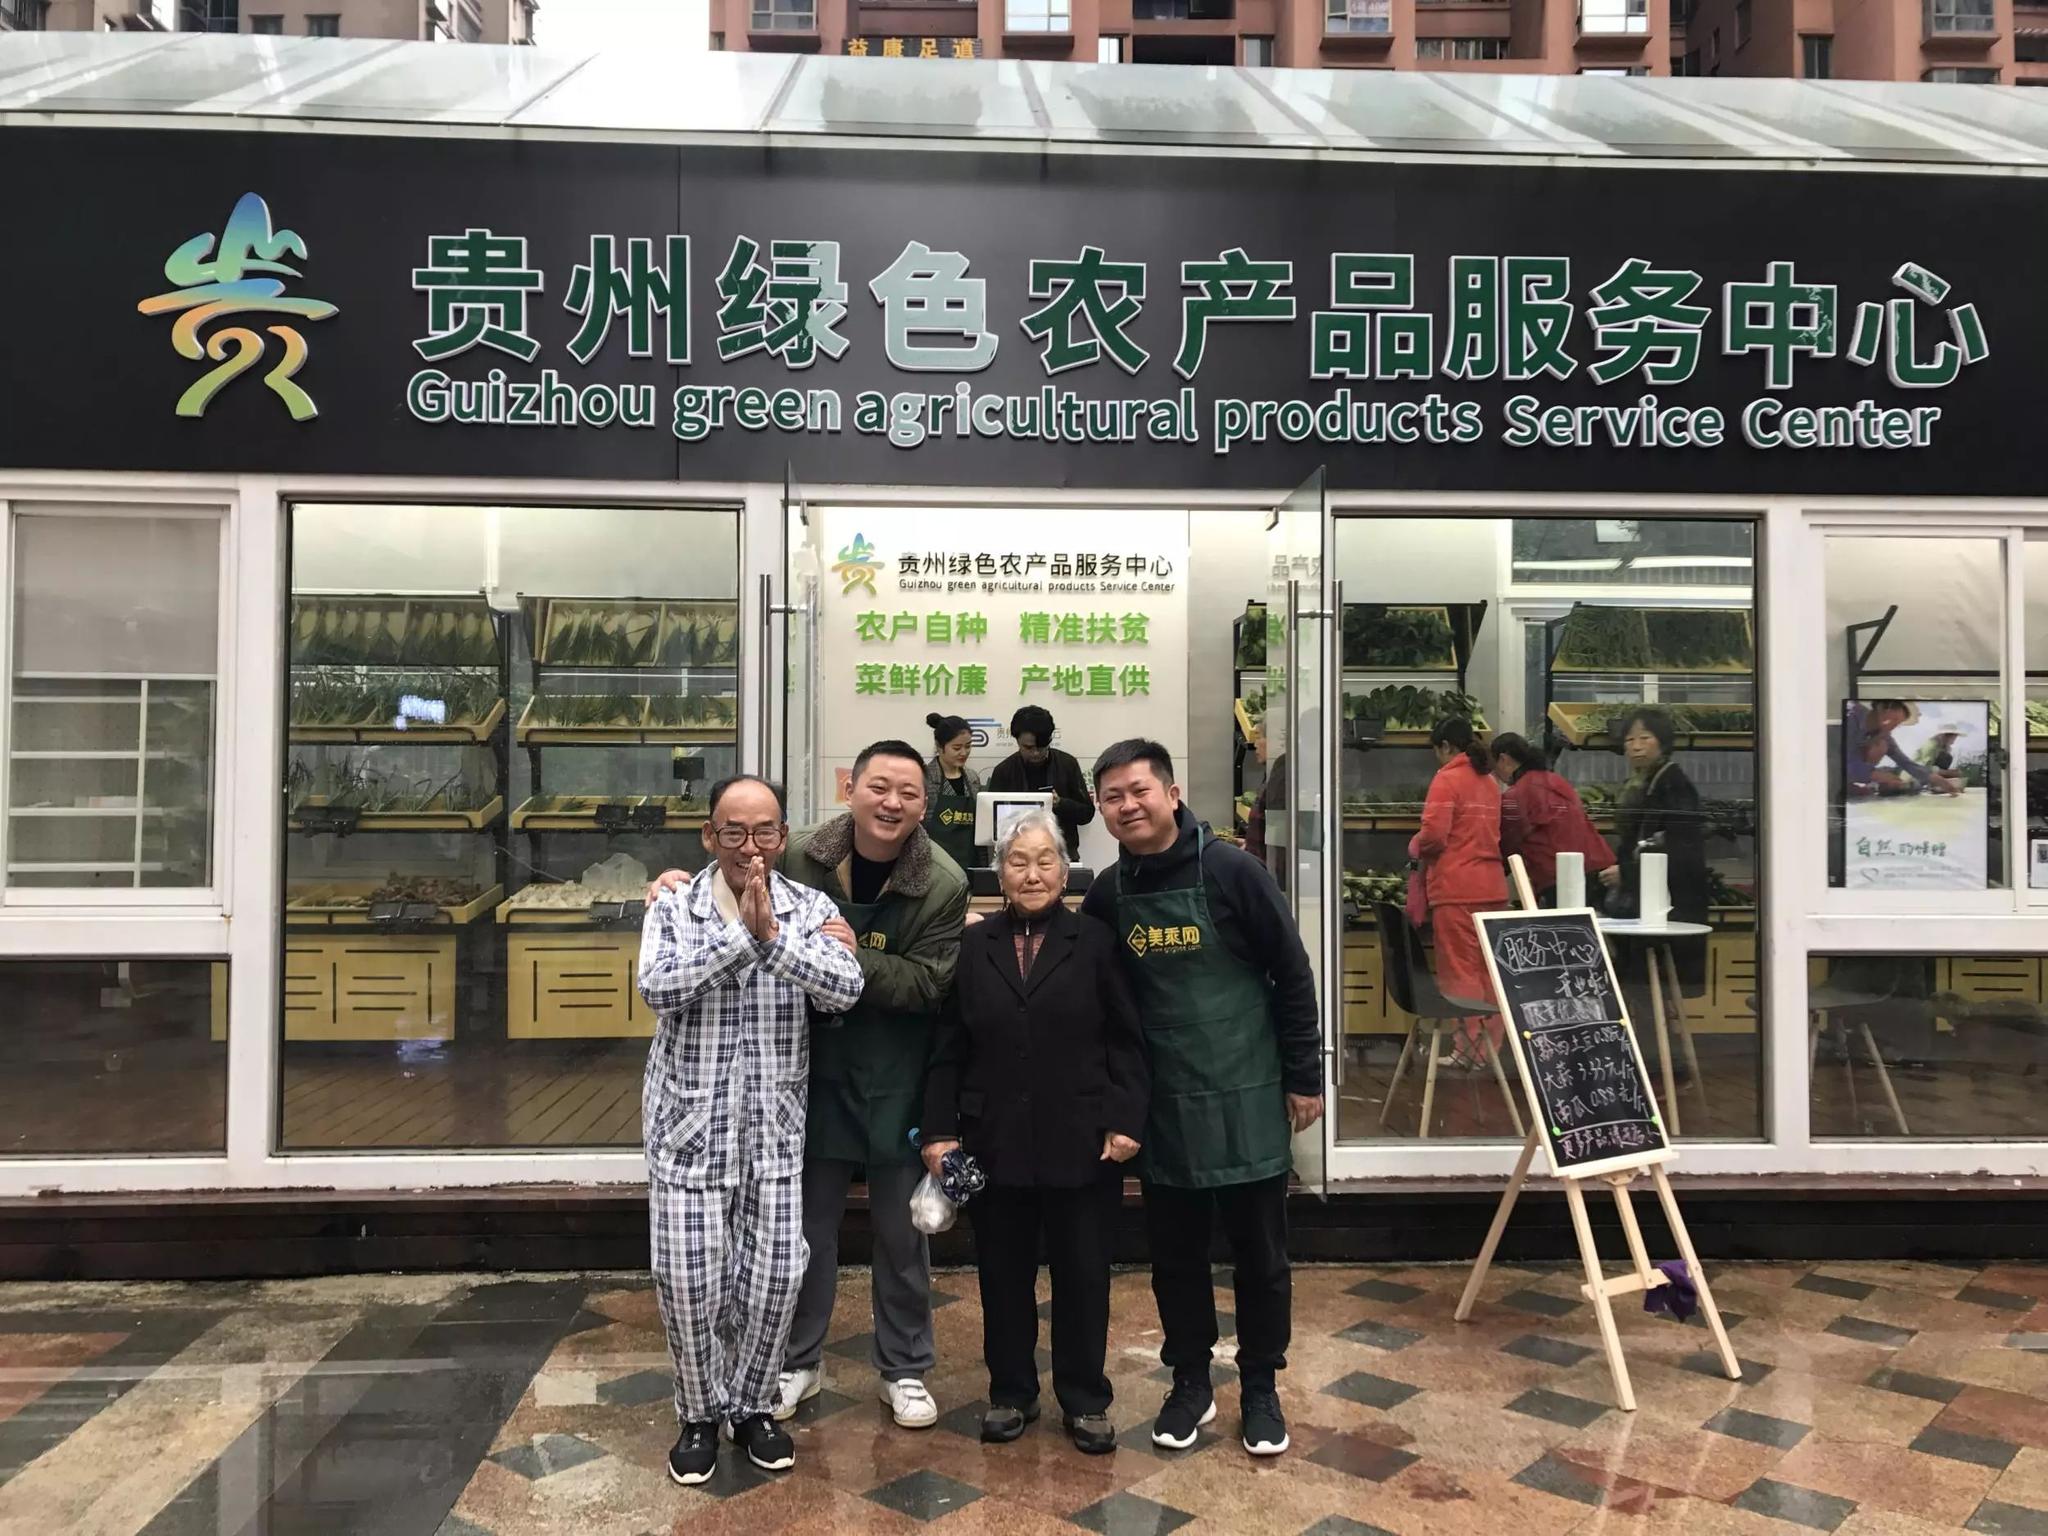 资讯丨贵州电商云首个绿色农产品服务中心挂牌